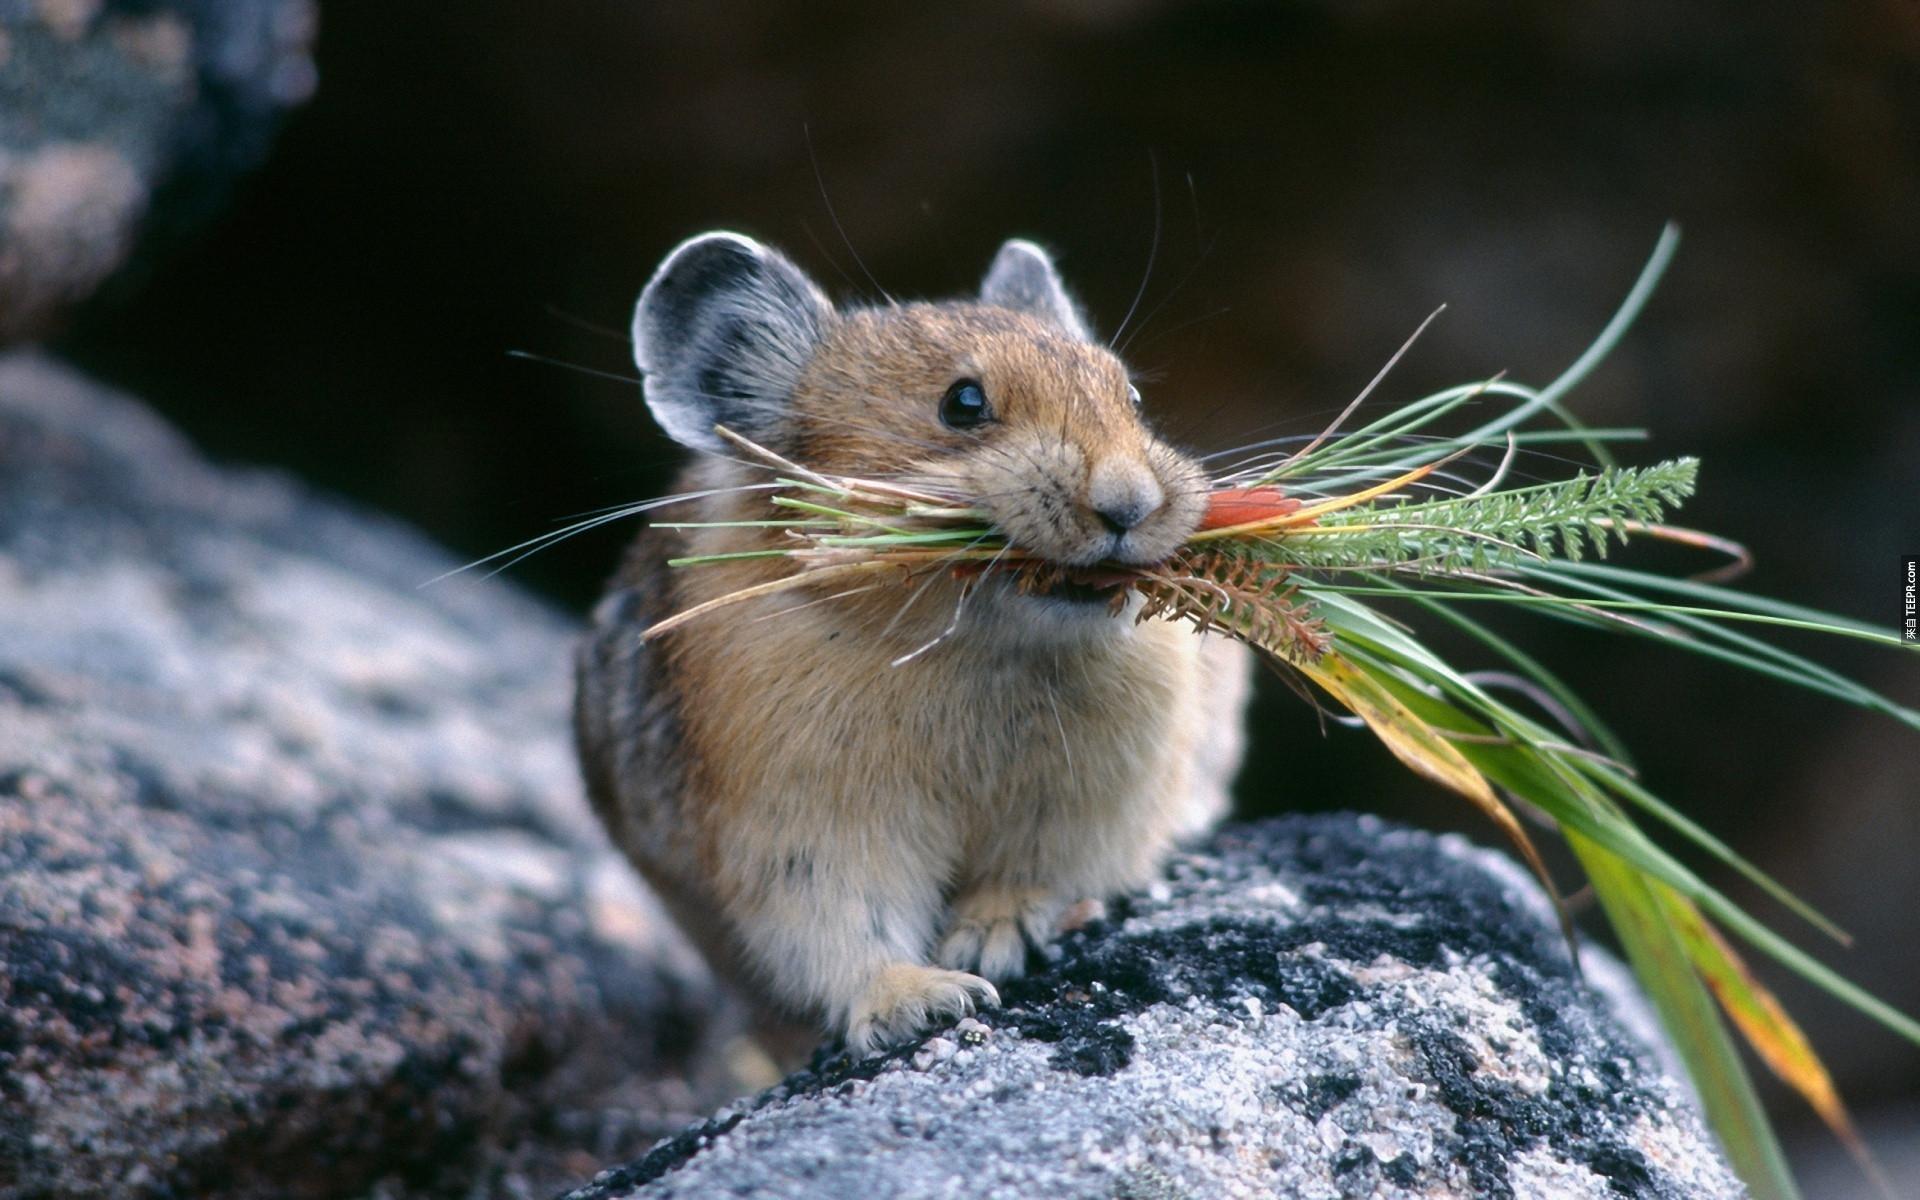 40. 鼠兔 (Pikas) 会为了过冬把很多的甘草储存起来。 